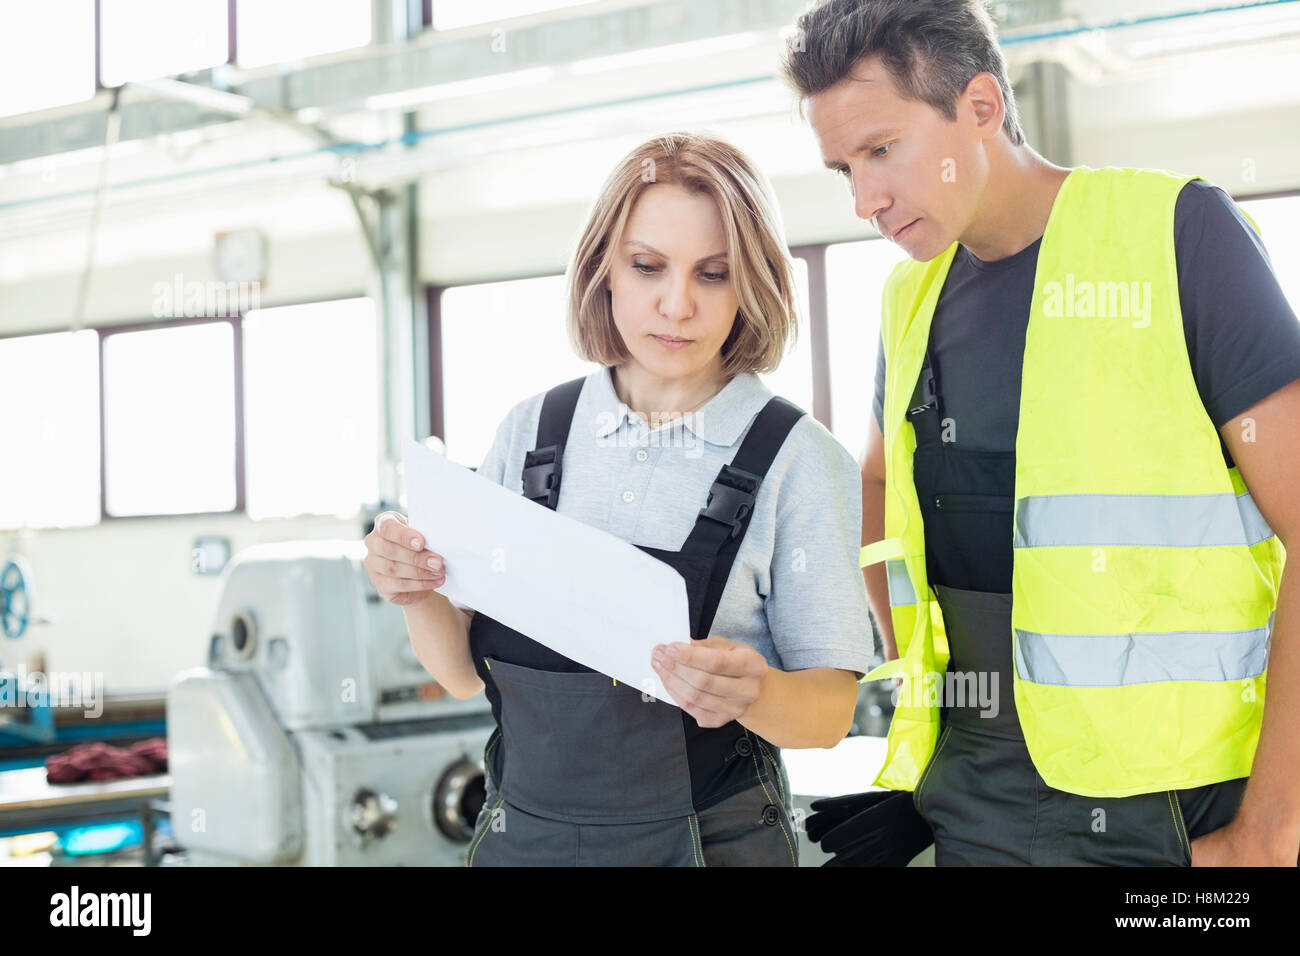 Männliche und weibliche Arbeiter Prüfung Papier in der Industrie Stockfoto